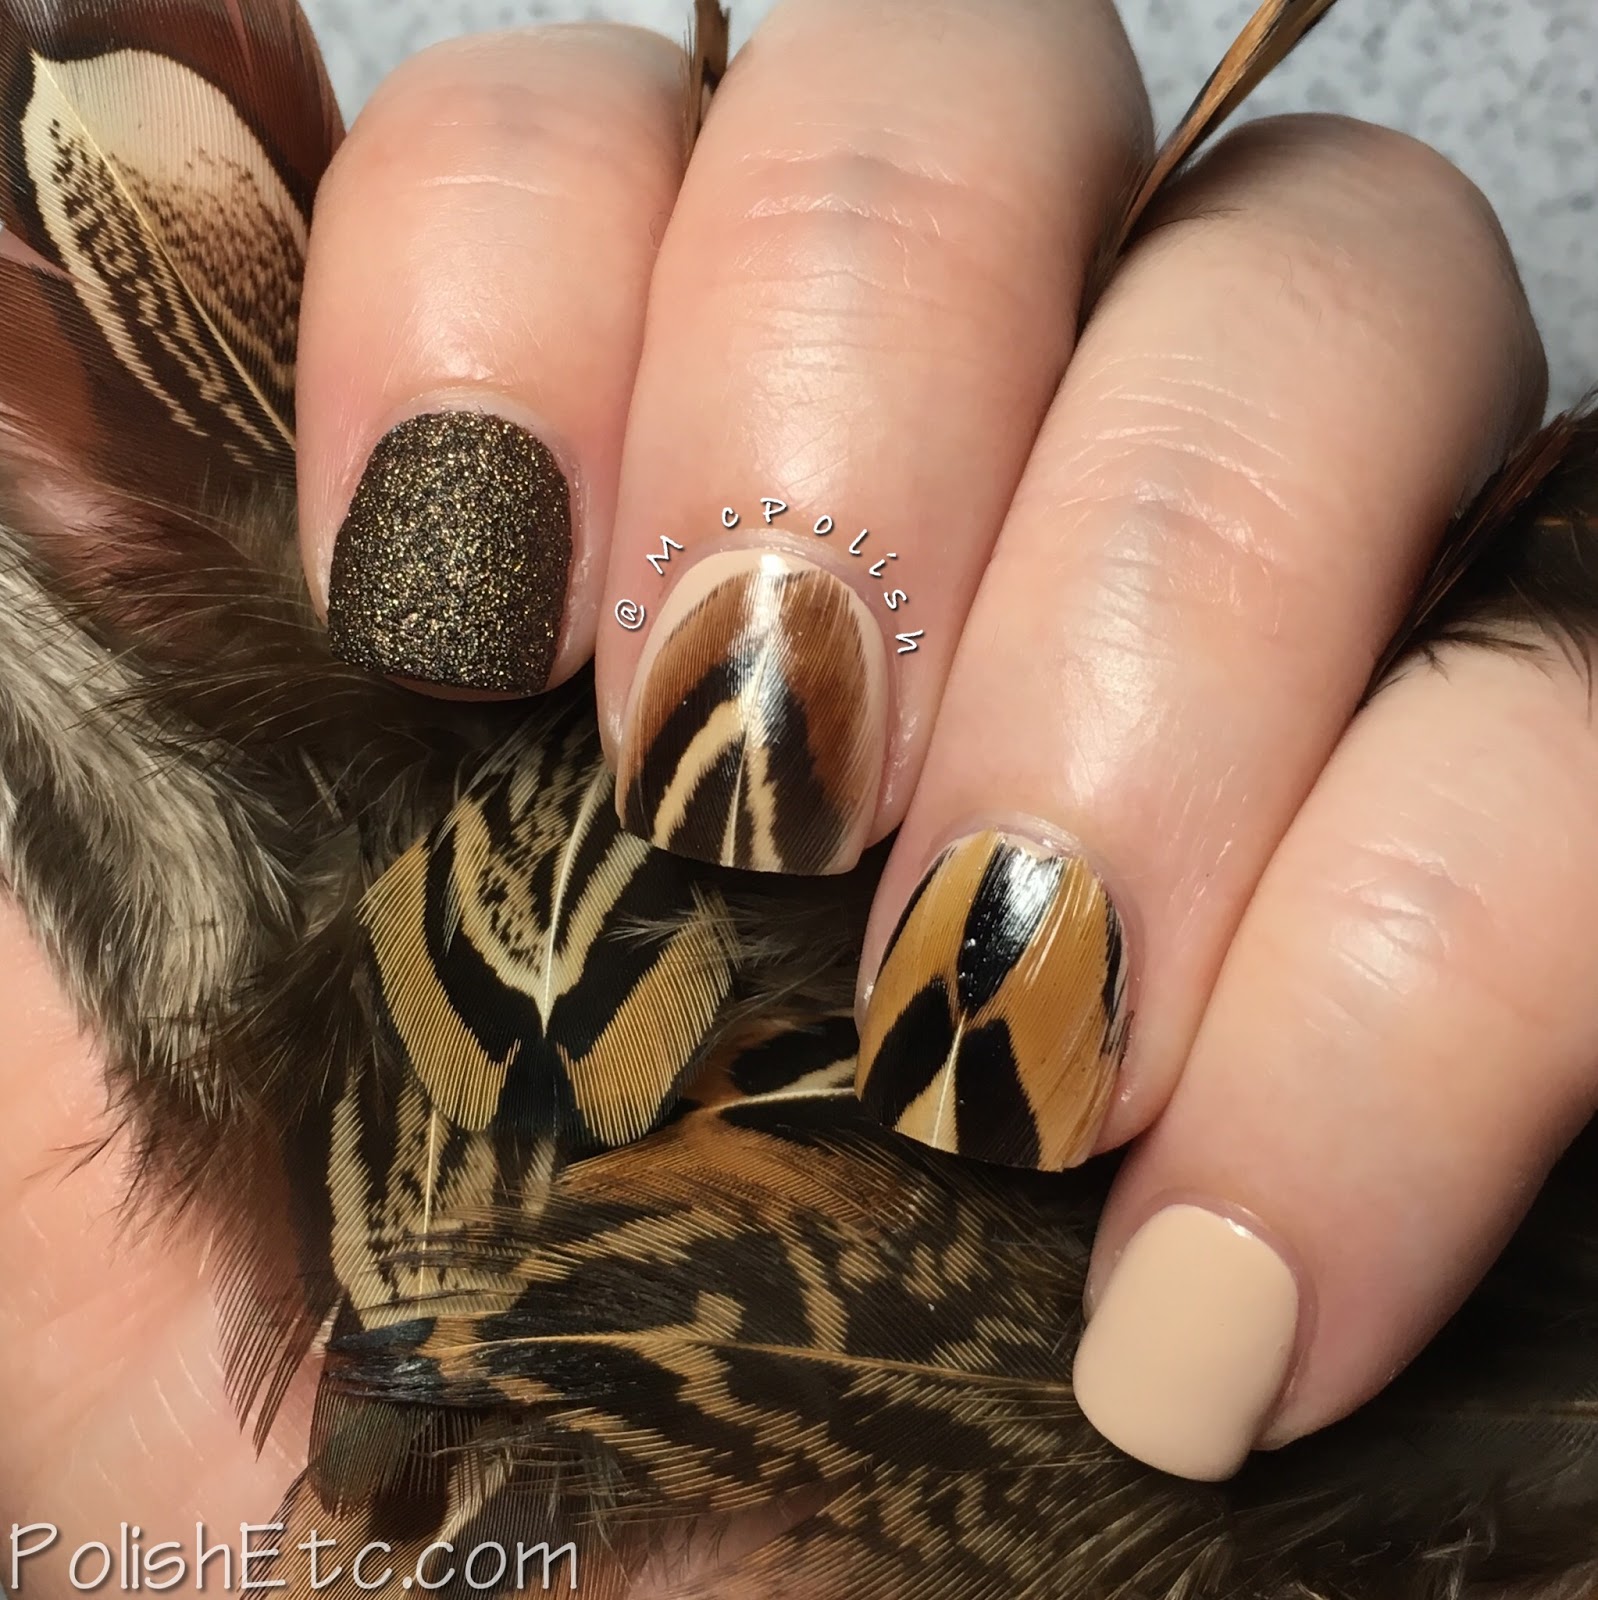 Amateur Manicure : A Nail Art Blog: Double Gradient Leopard Print Nail Art